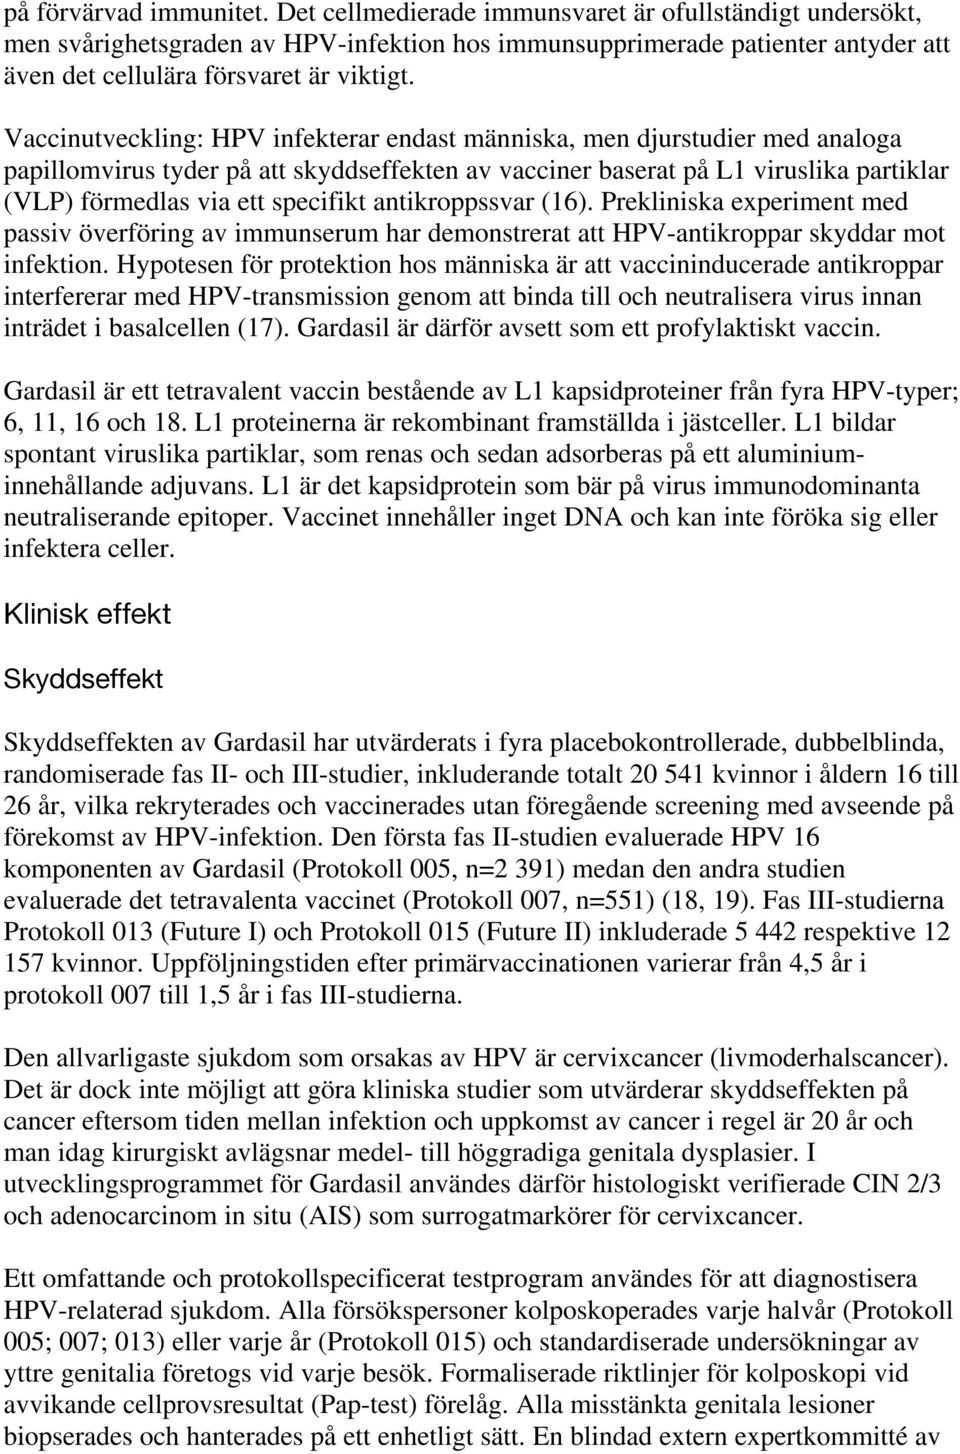 Vaccinutveckling: HPV infekterar endast människa, men djurstudier med analoga papillomvirus tyder på att skyddseffekten av vacciner baserat på L1 viruslika partiklar (VLP) förmedlas via ett specifikt